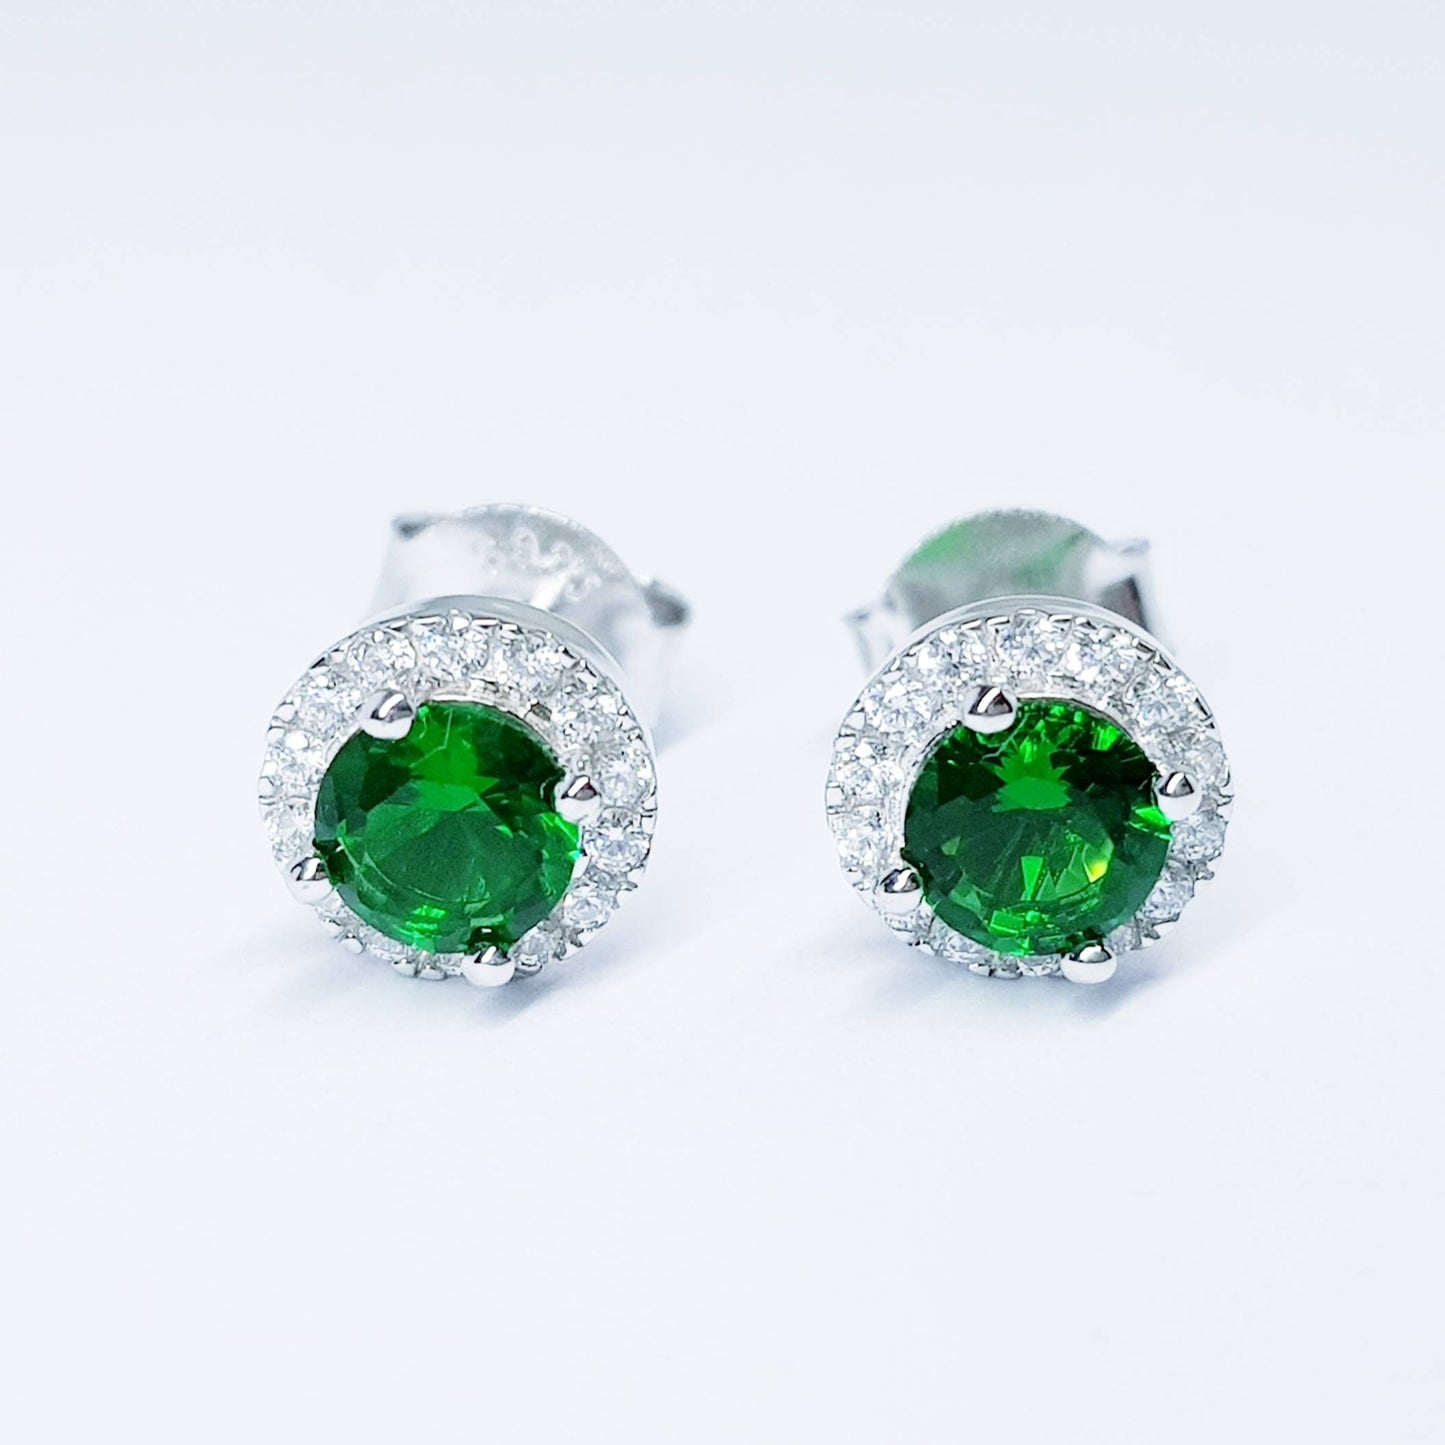 Green earrings, emerald stud earrings, gift for women, vintage earrings, diamond halo earrings, earrings for women, may birthstone studs